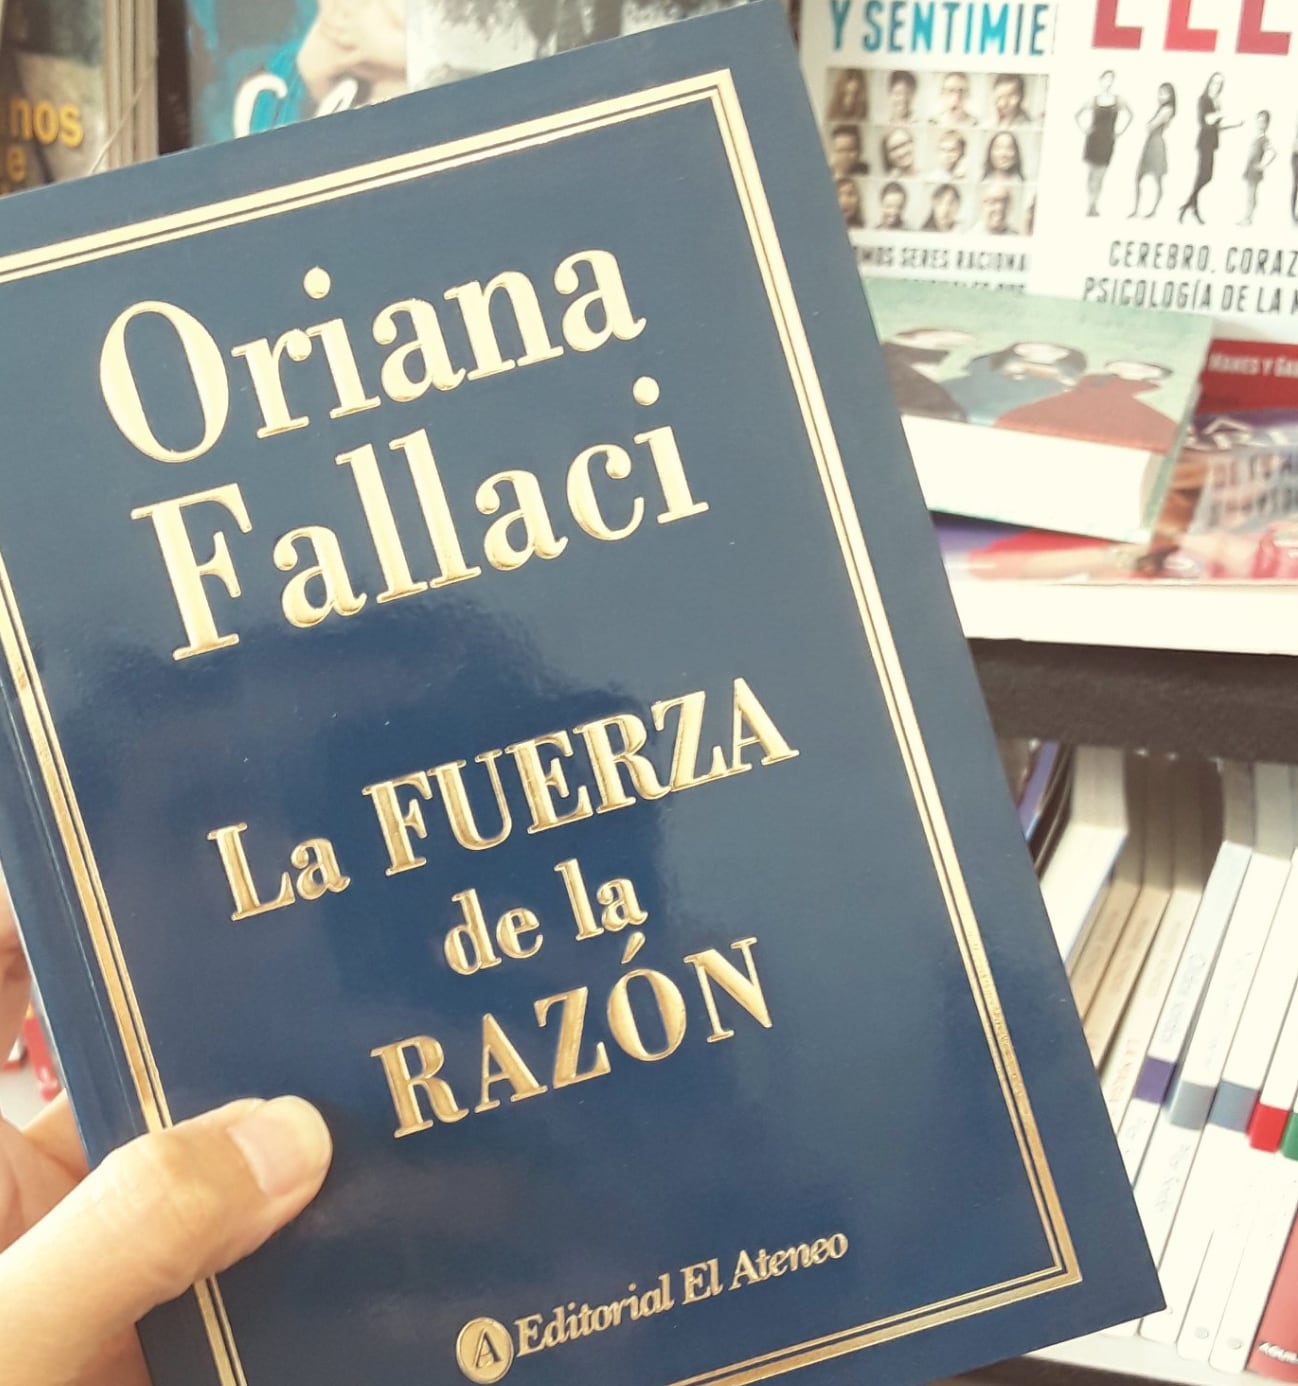 En "La fuerza de la razón", Oriana Fallaci rebuatizó Europa como "Eurabia" y descalificó al islamismo.